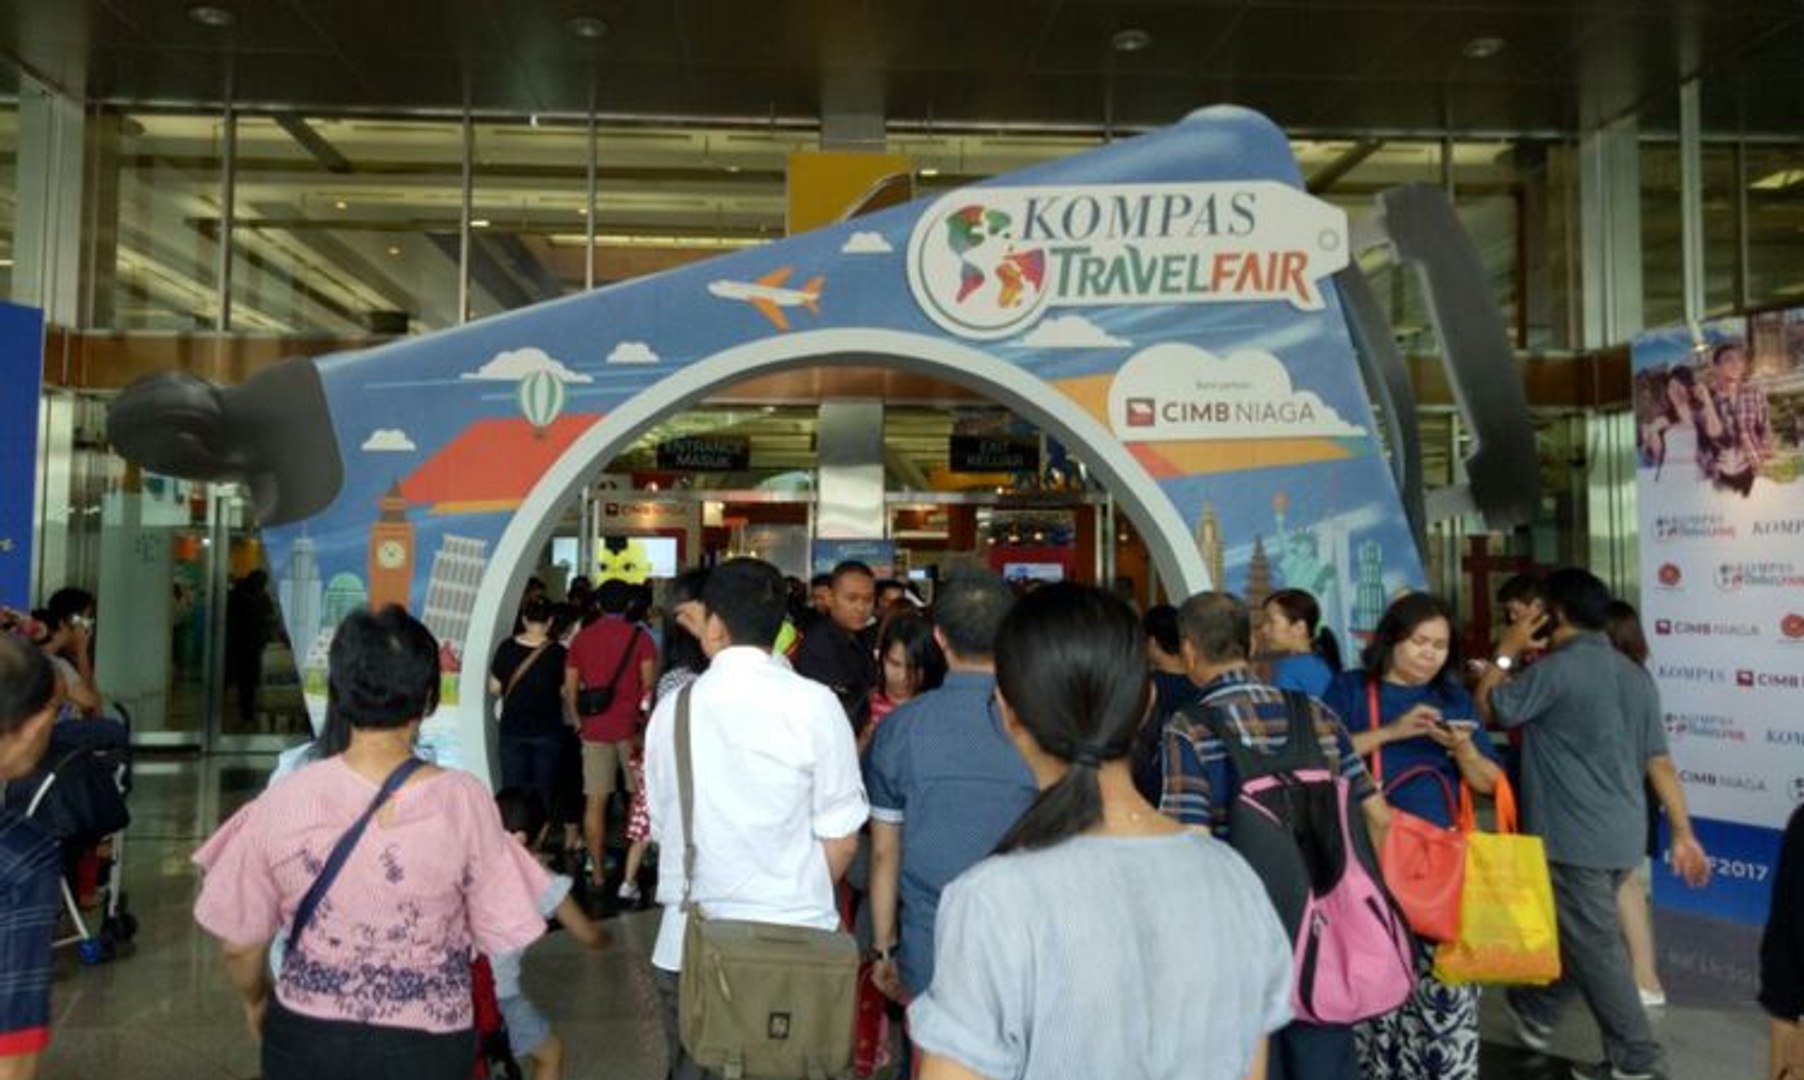 ⁣Kompas Travel Fair - Explore More, Travel More